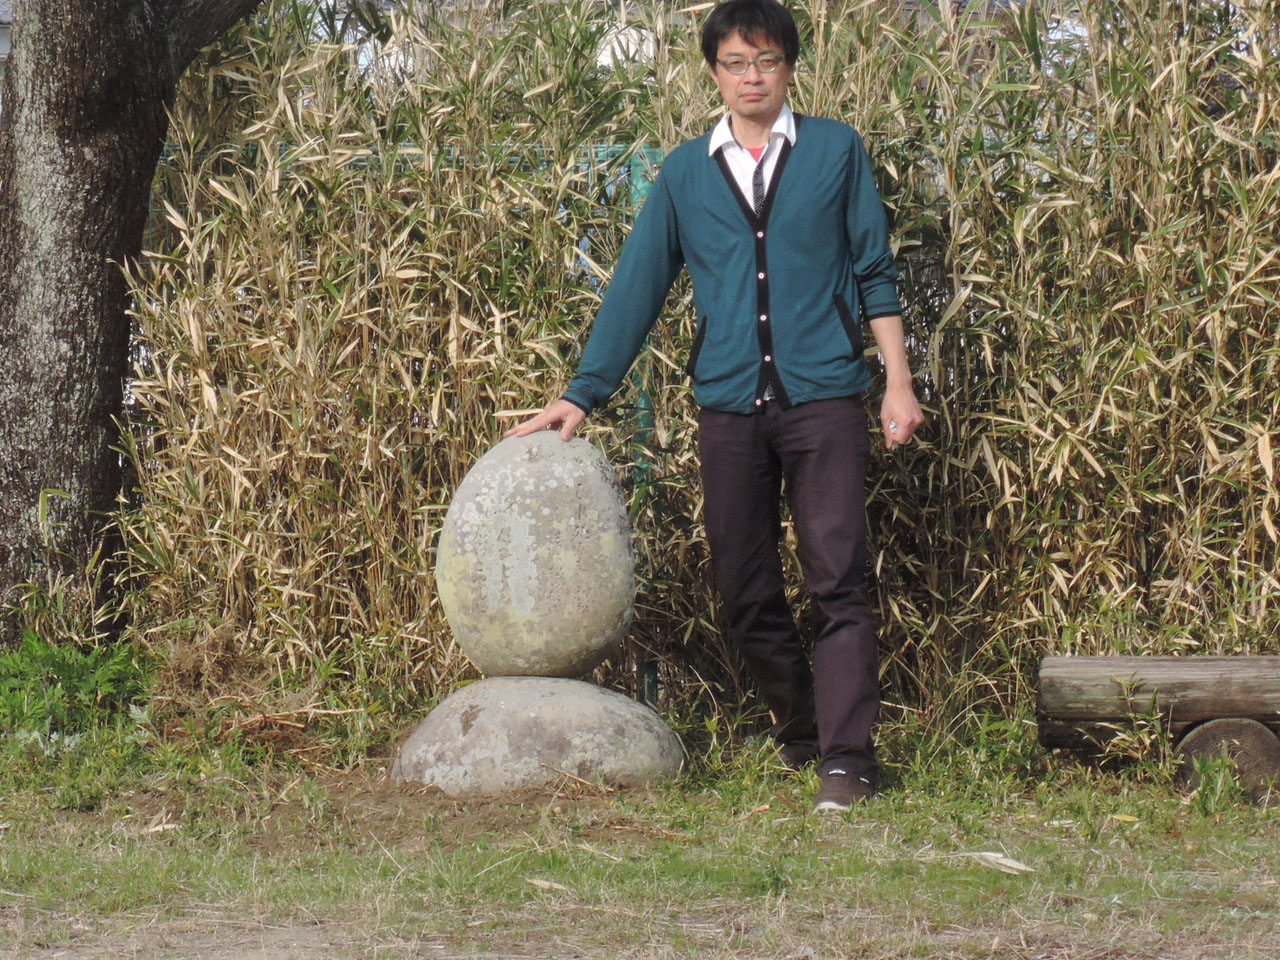 移転が完了した辞世の句碑。作業に立ち会った事務局瀬戸雅弘と並んで大きさの比較をする。石碑は腰の高さほど。モデルの身長は約180cm